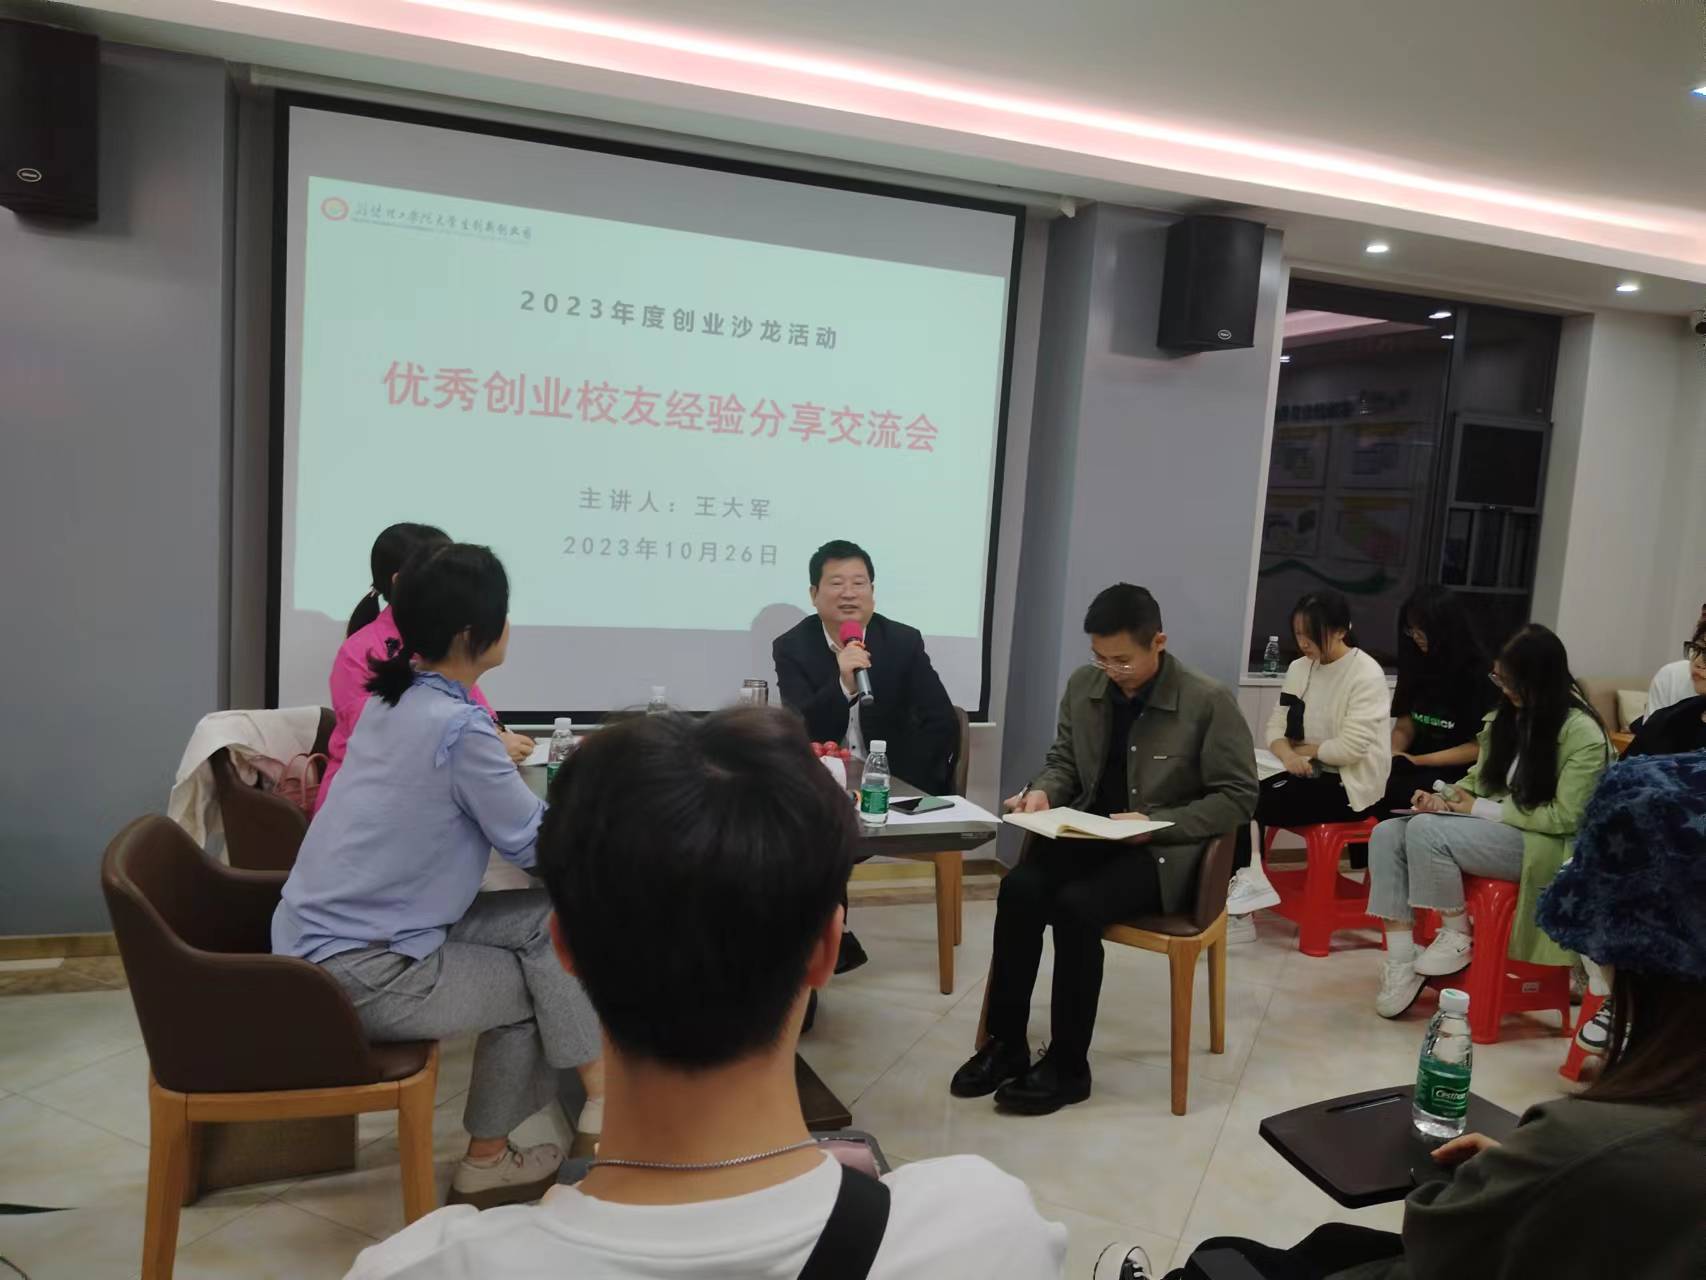 我校博士生余芳文团队喜获创业扶持基金12万元-中国地质大学（武汉）研究生院